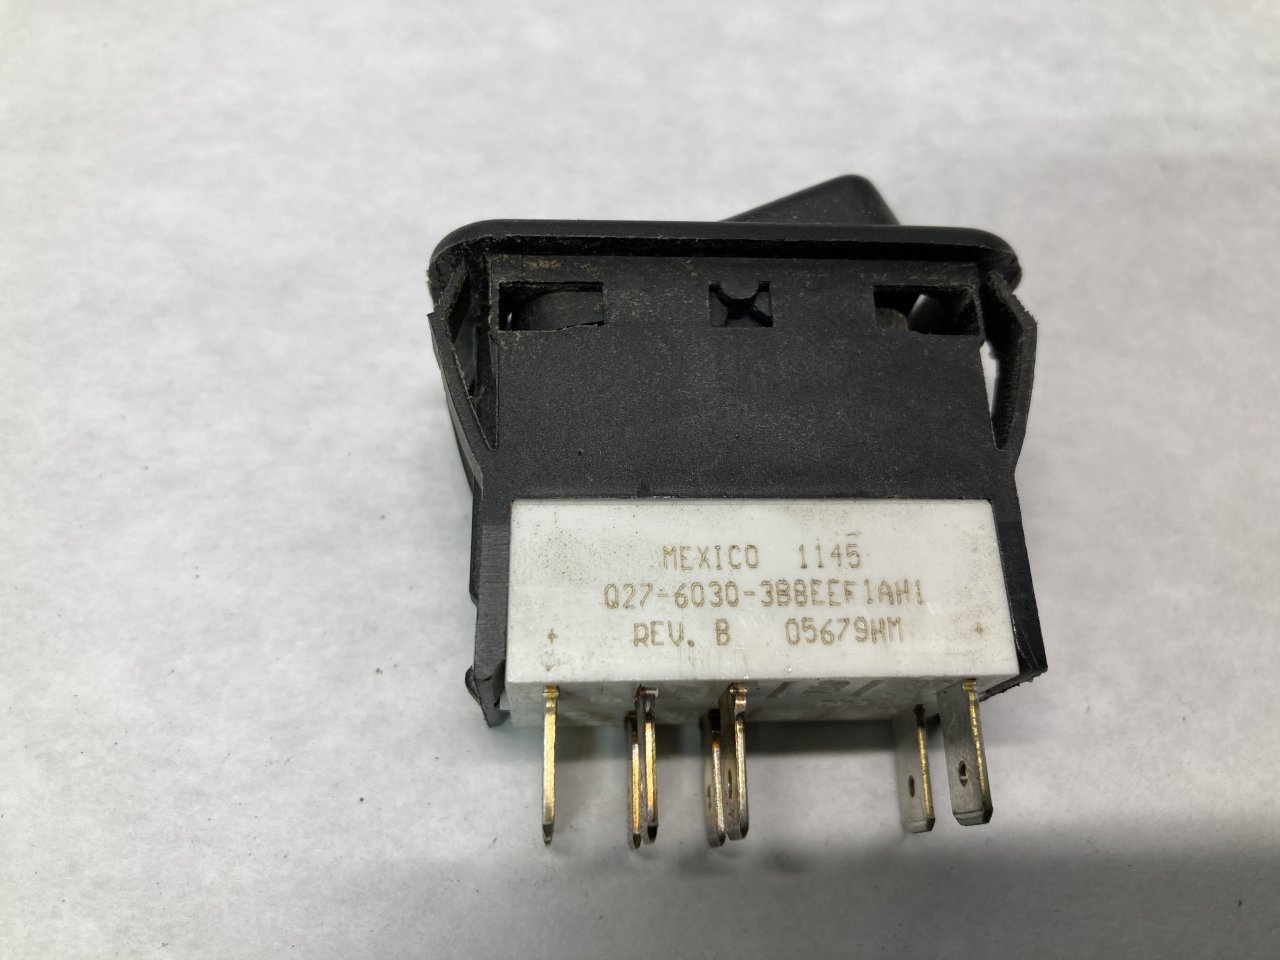 Q27-6030-1145 | Peterbilt 386 Dash/Console Switch for Sale